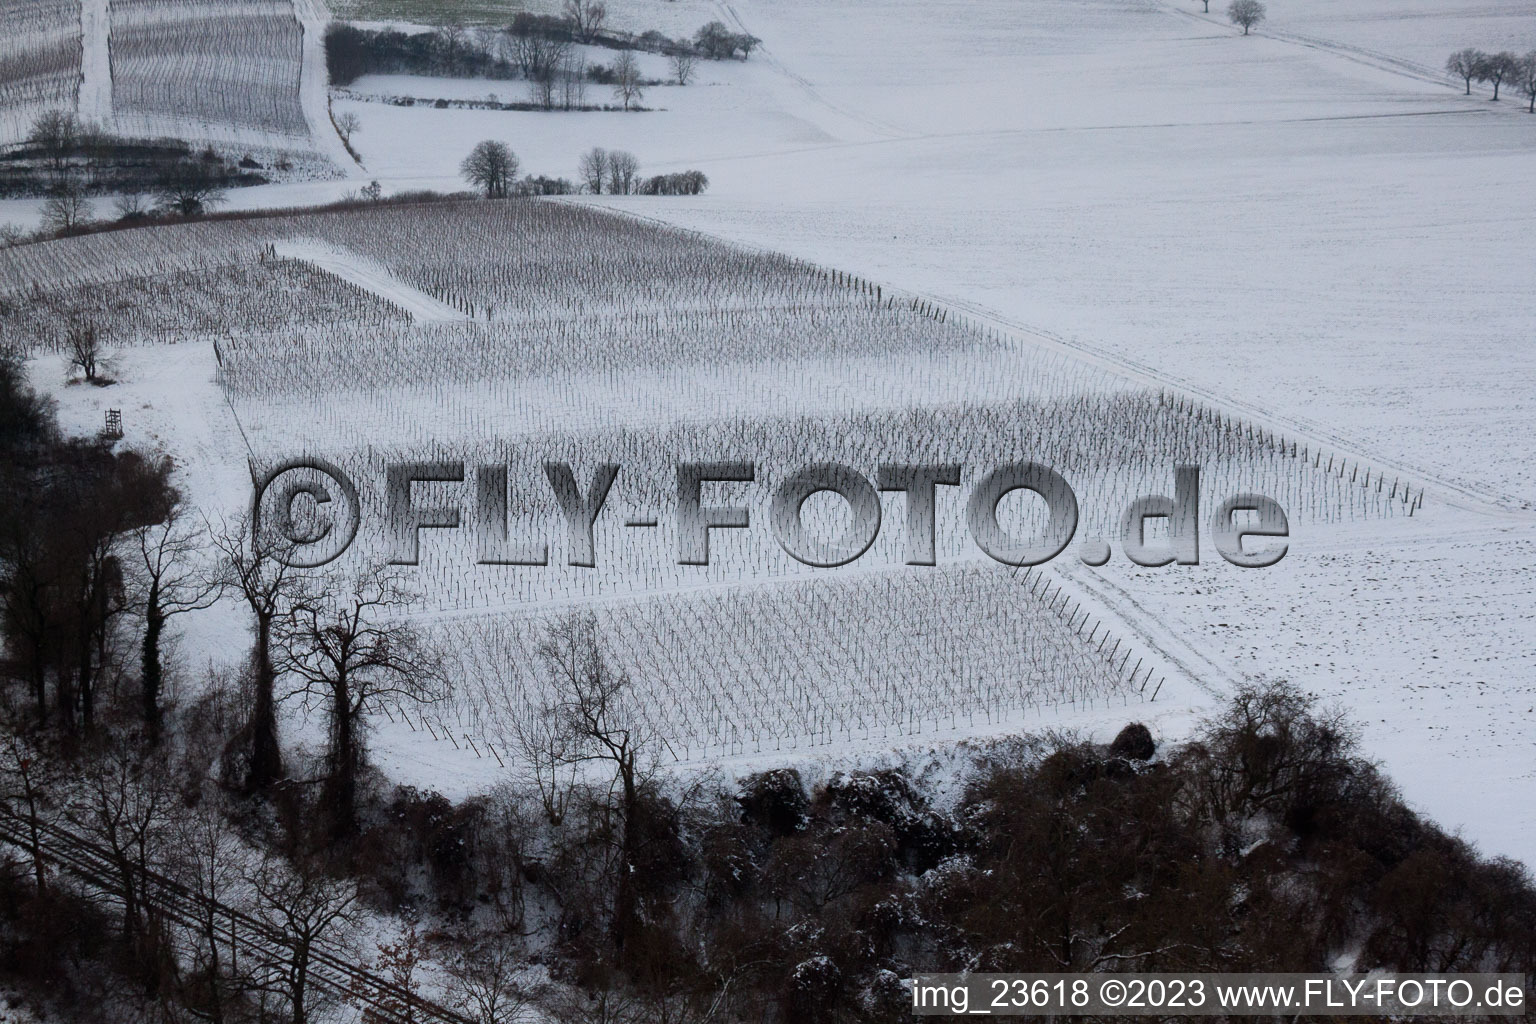 Vue aérienne de Ailier d'hiver à Freckenfeld dans le département Rhénanie-Palatinat, Allemagne